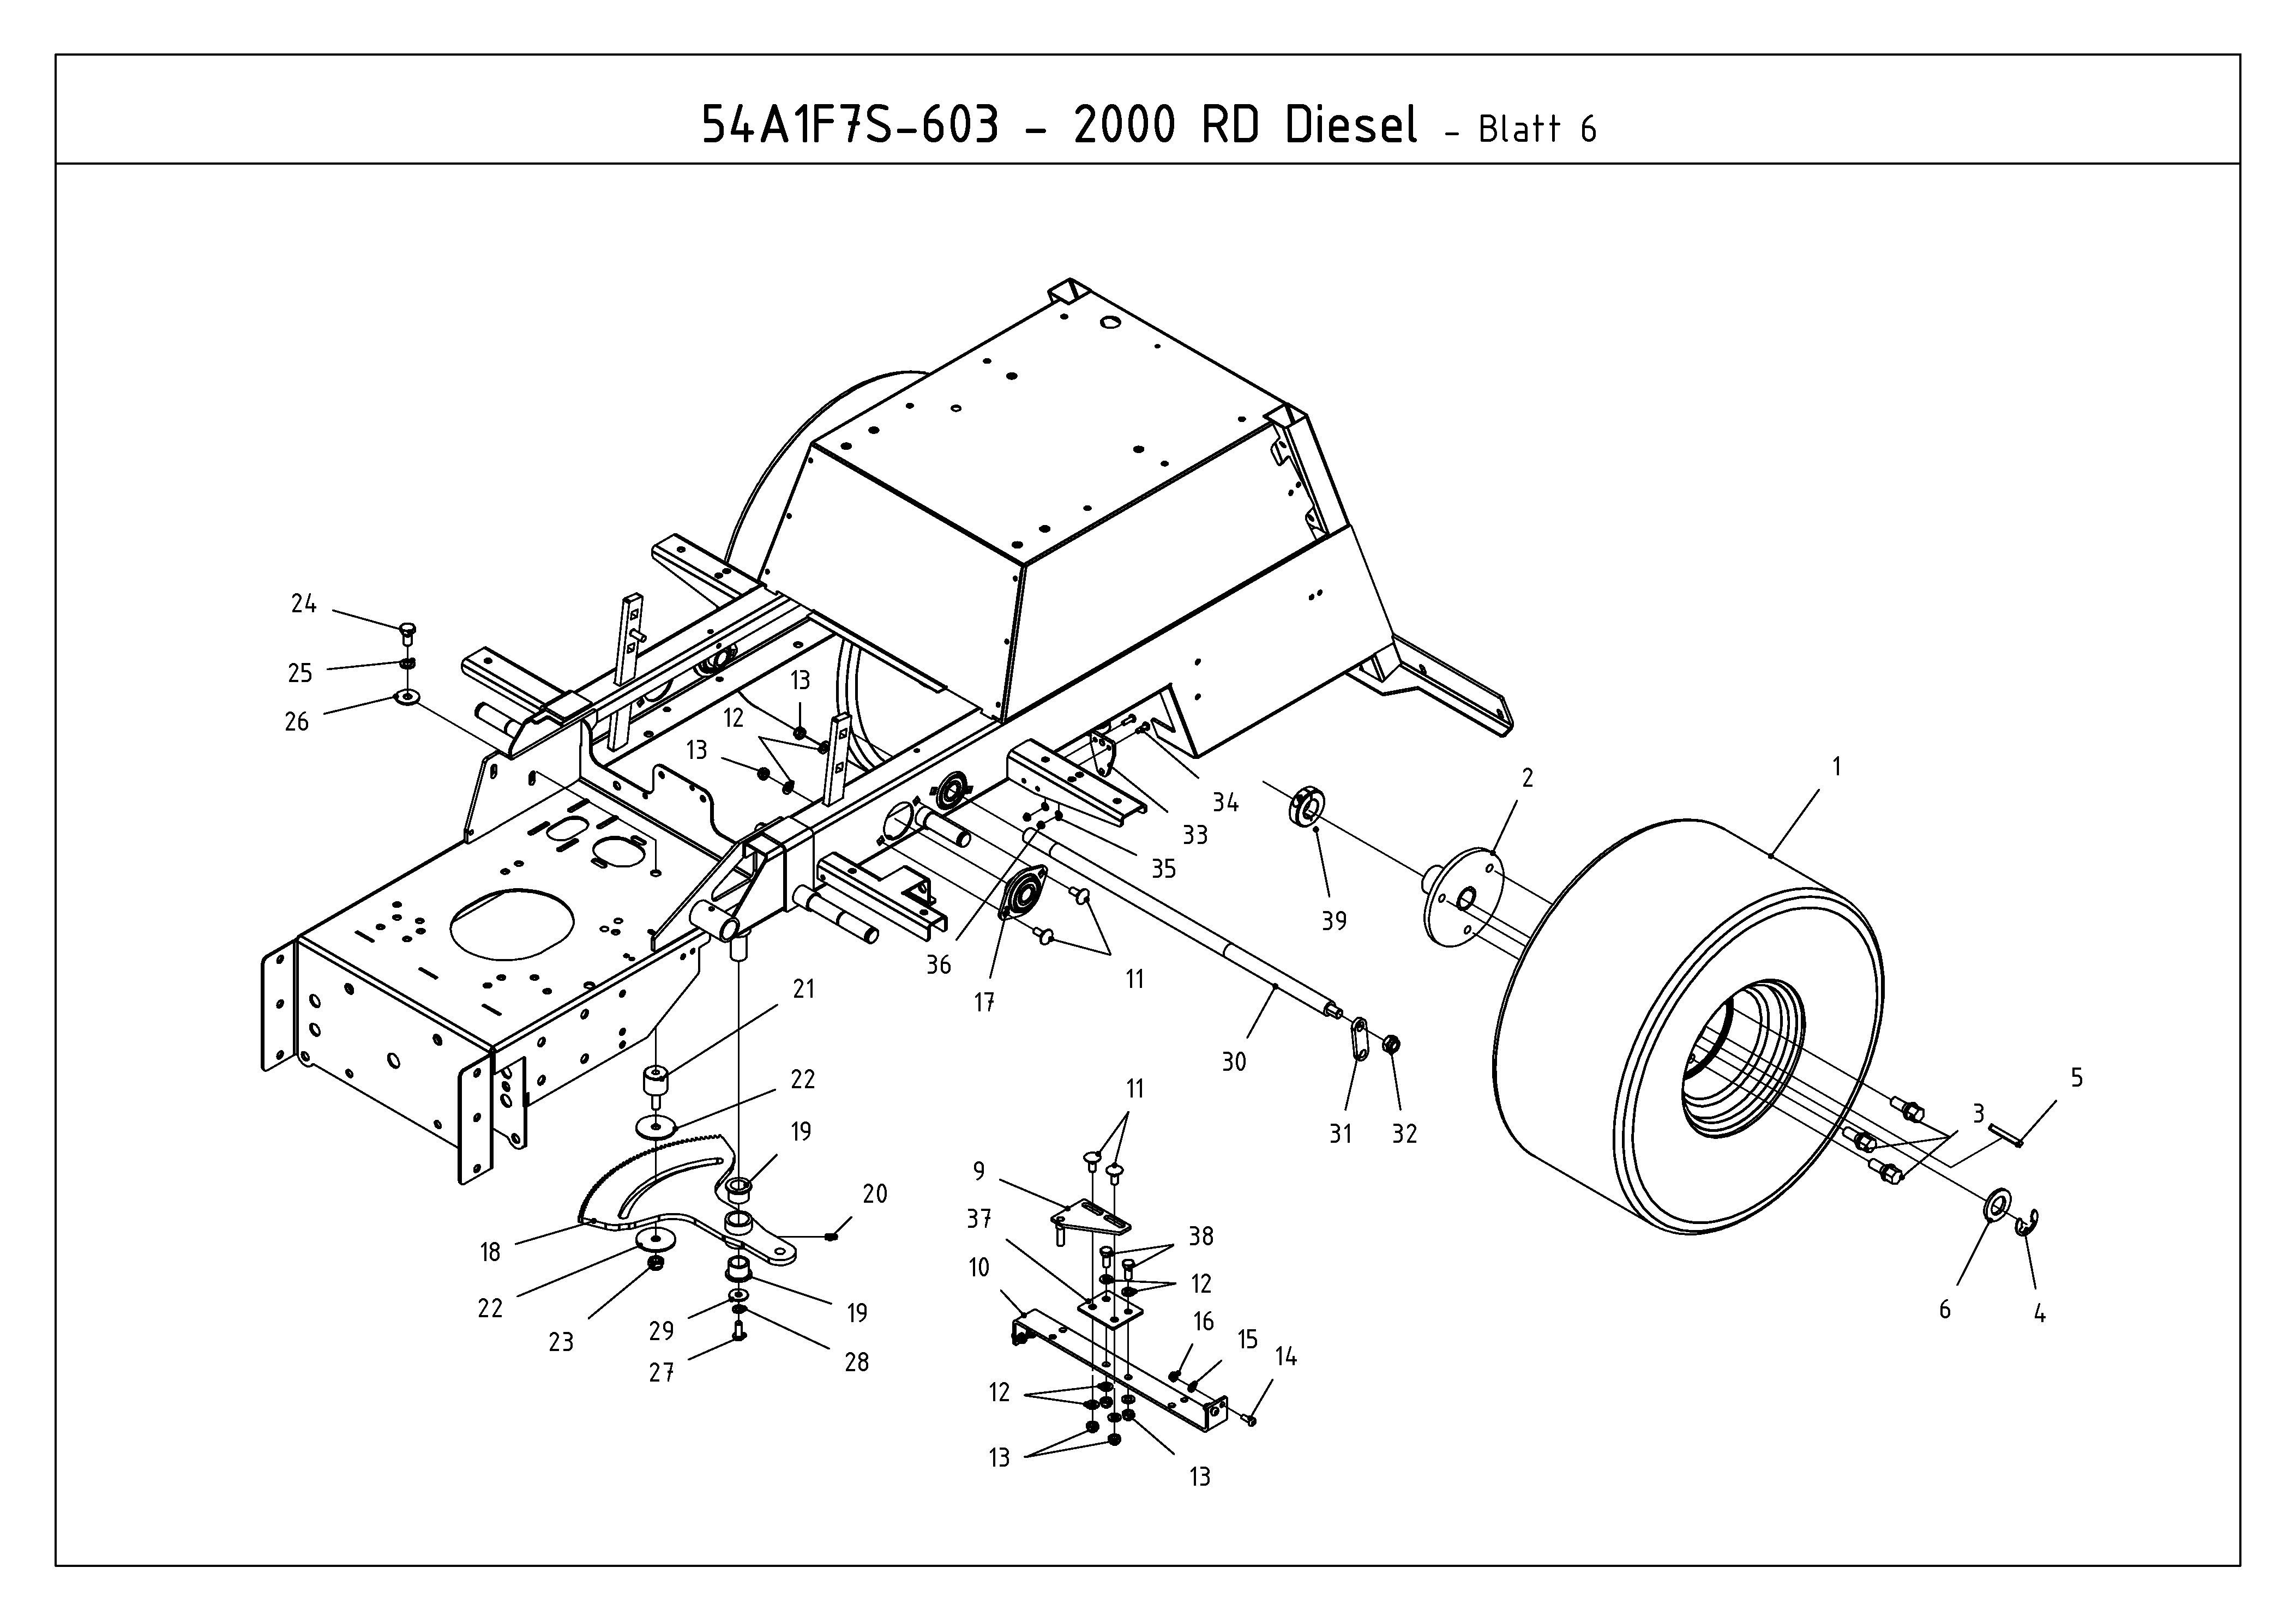 Cub Cadet, Kompakttraktoren, CC 2000 RD, 54A1F7S-603 (2009), Lenkung, Räder hinten, MTD Ersatzteil-Zeichnungen